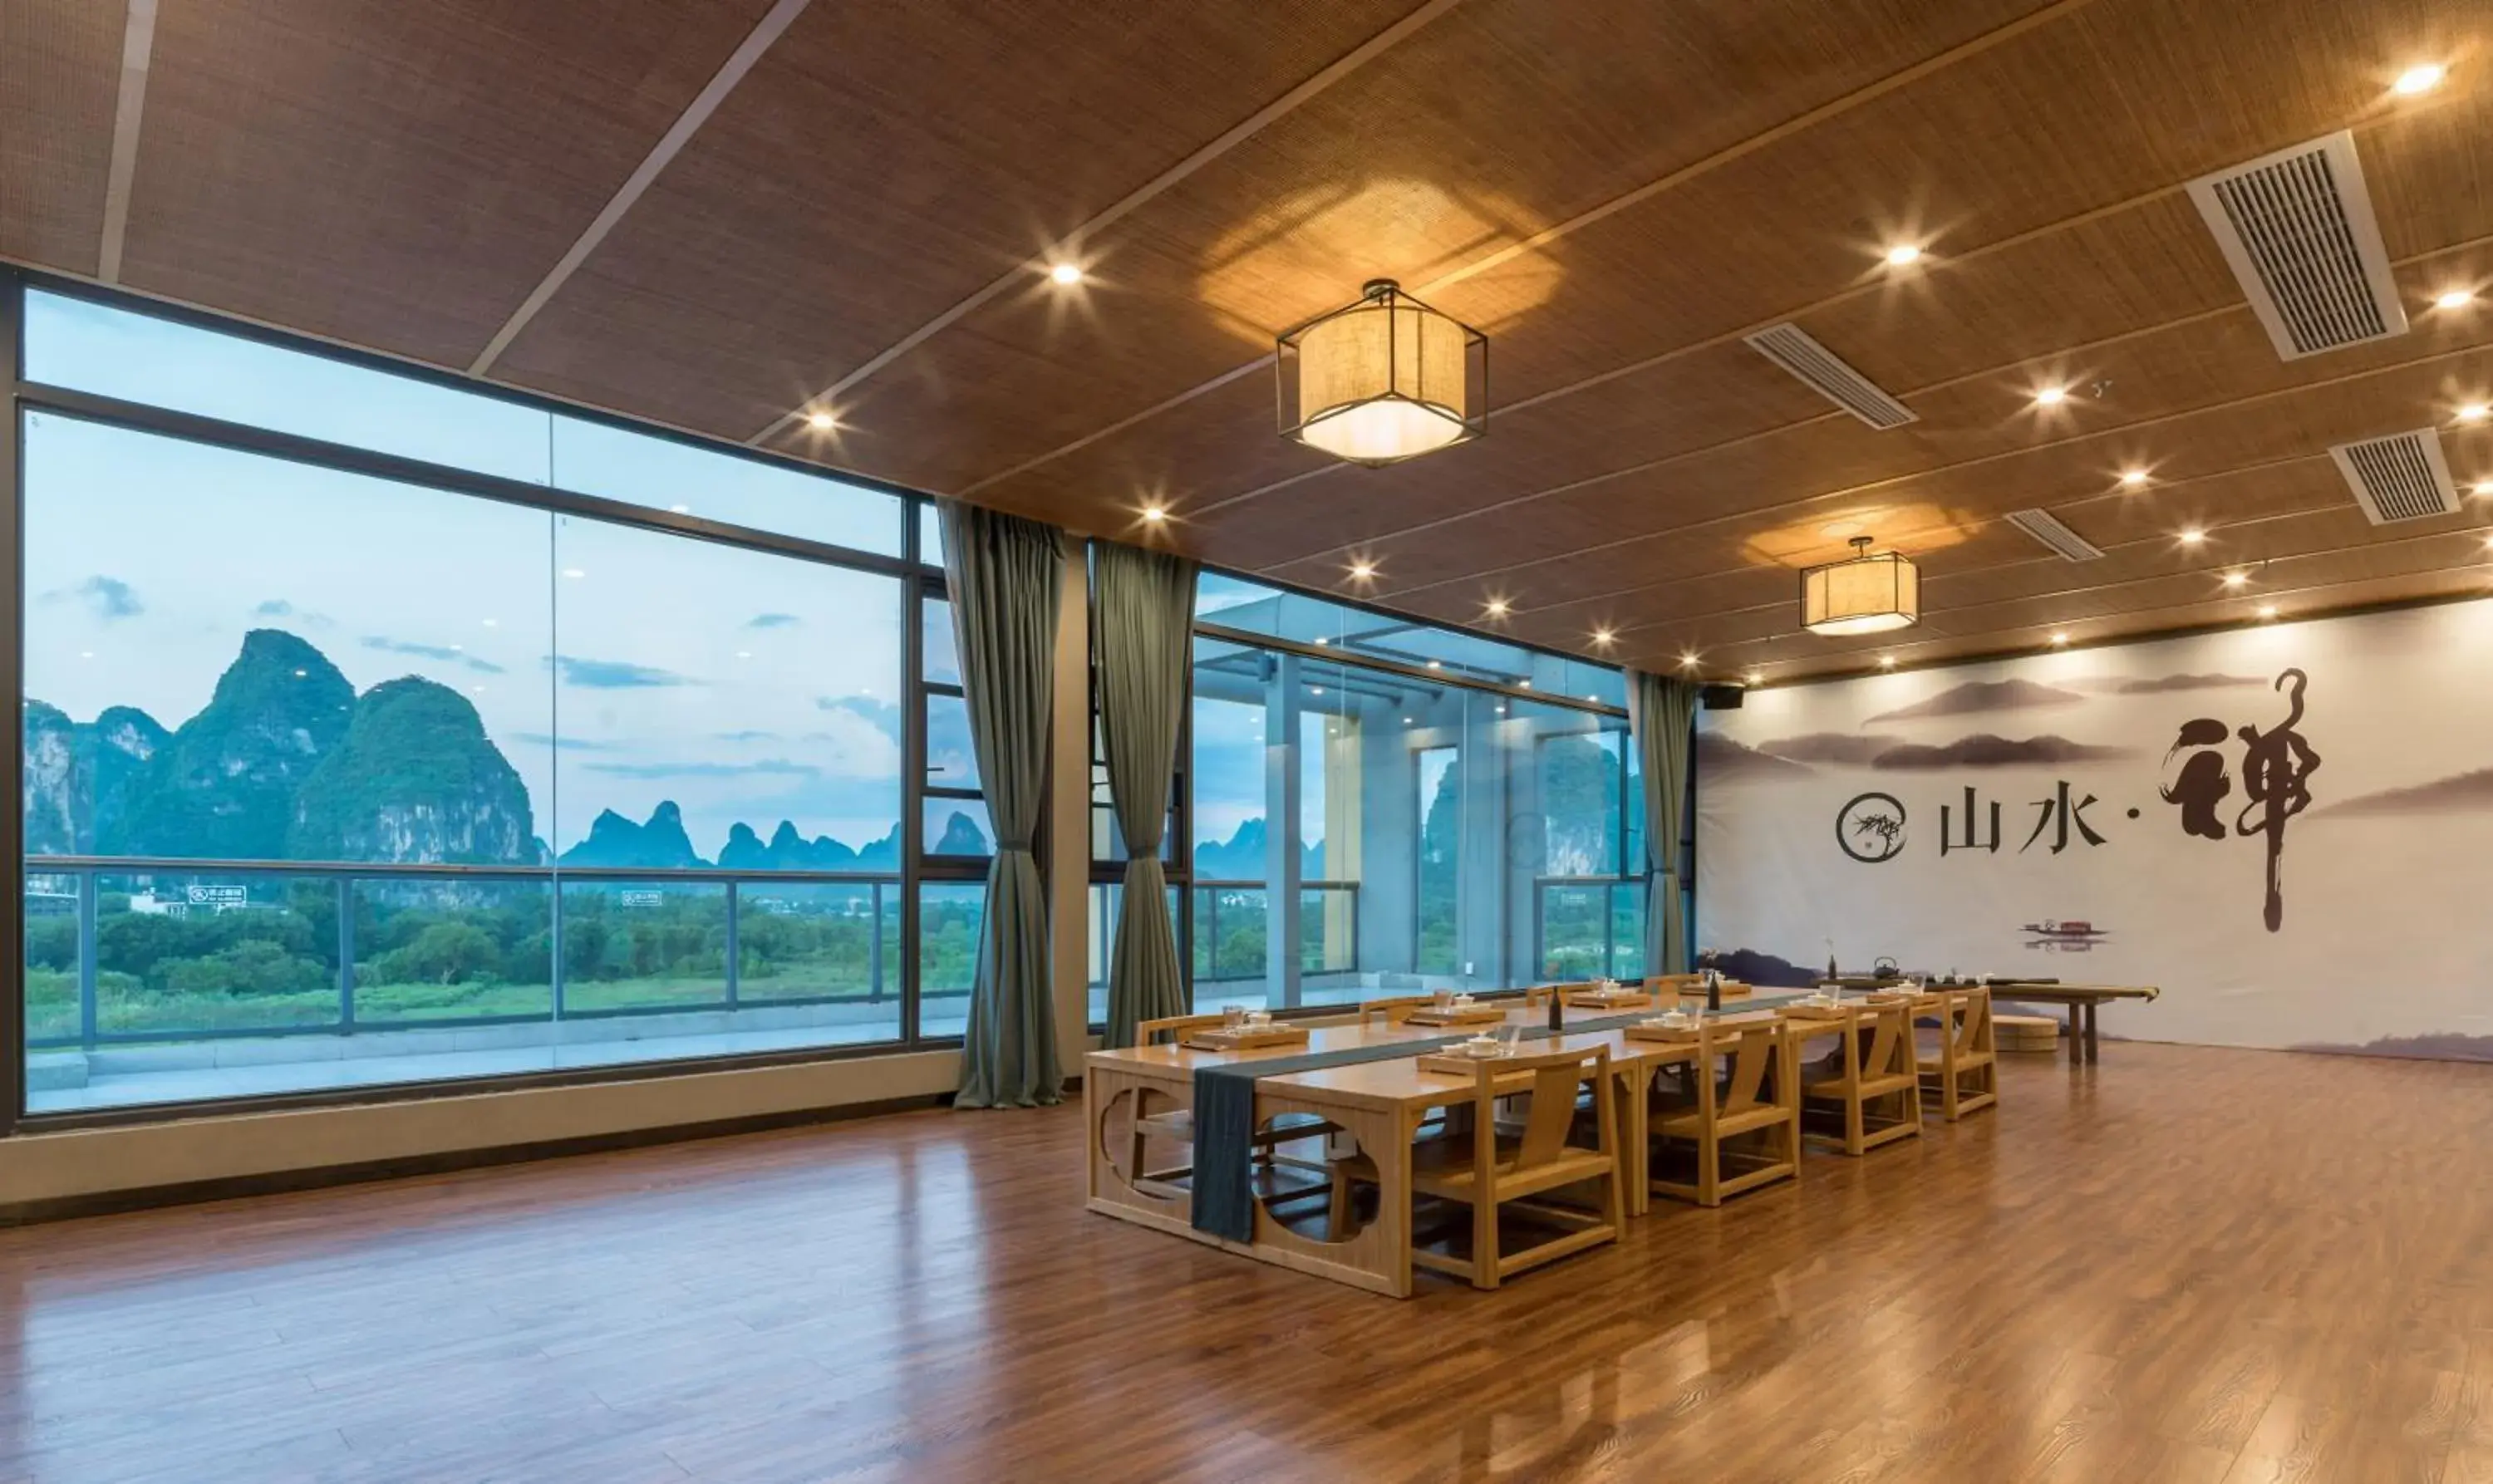 Banquet/Function facilities in Yangshuo Zen Garden Resort